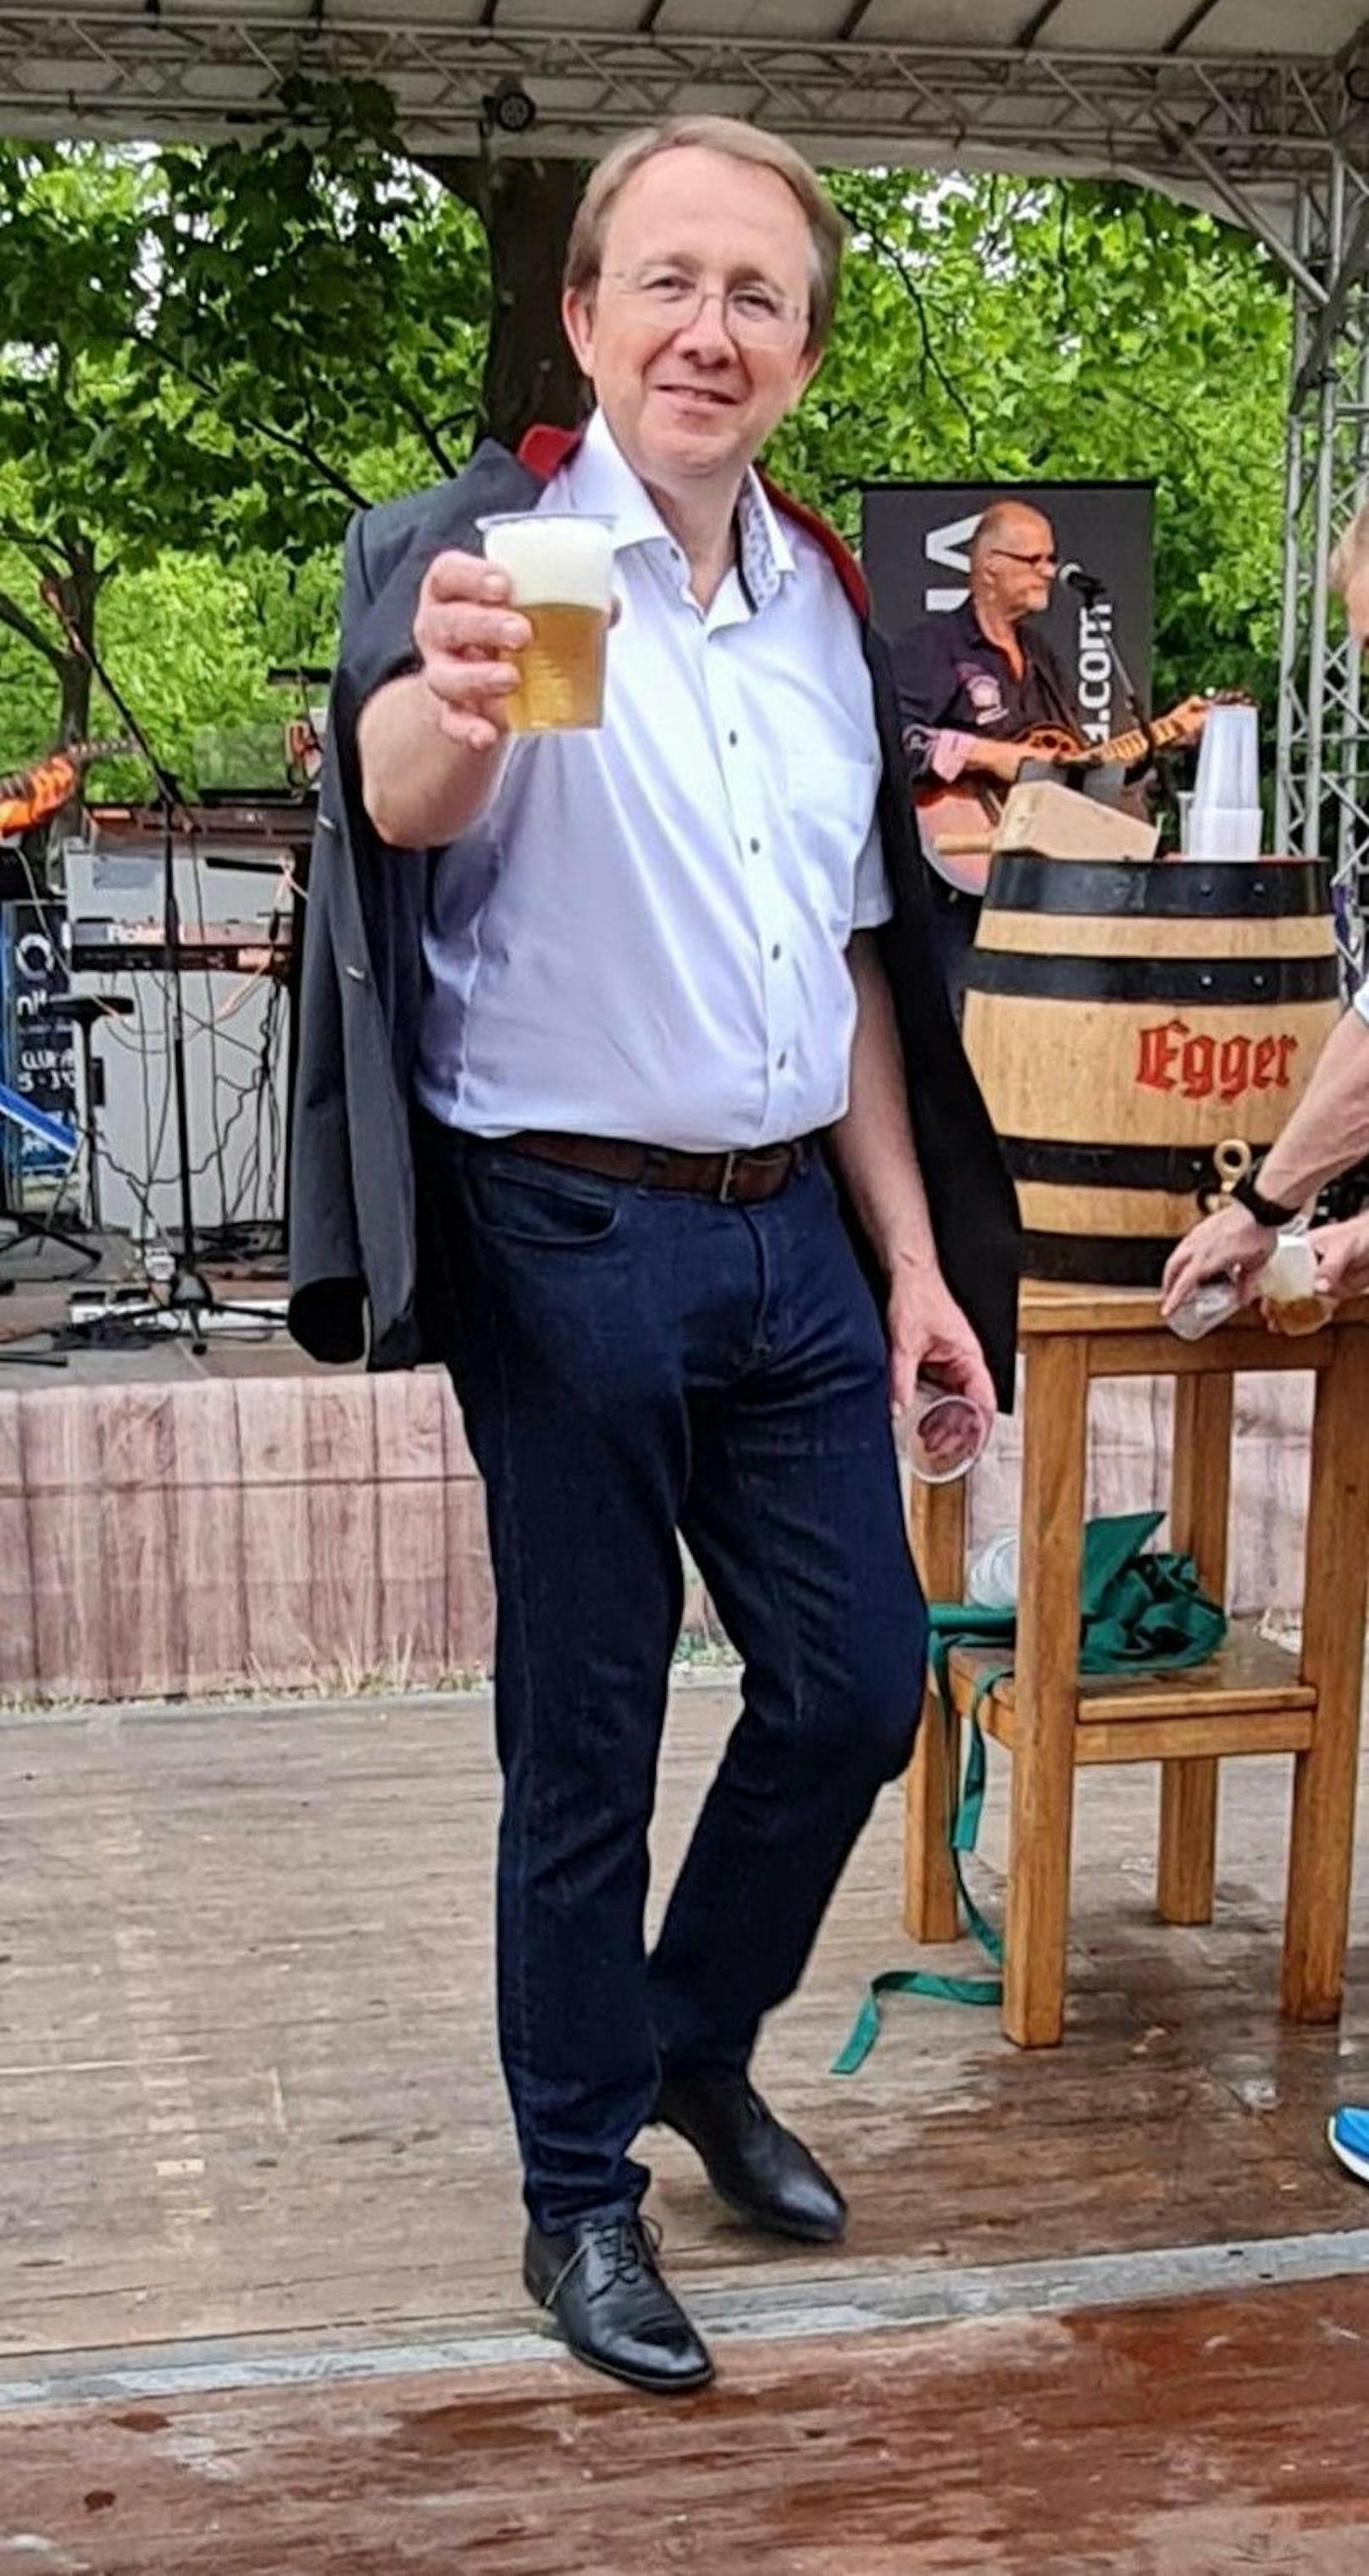 St. Pöltens Bürgermeister Matthias Stadler teilte Bier an die Gäste aus.